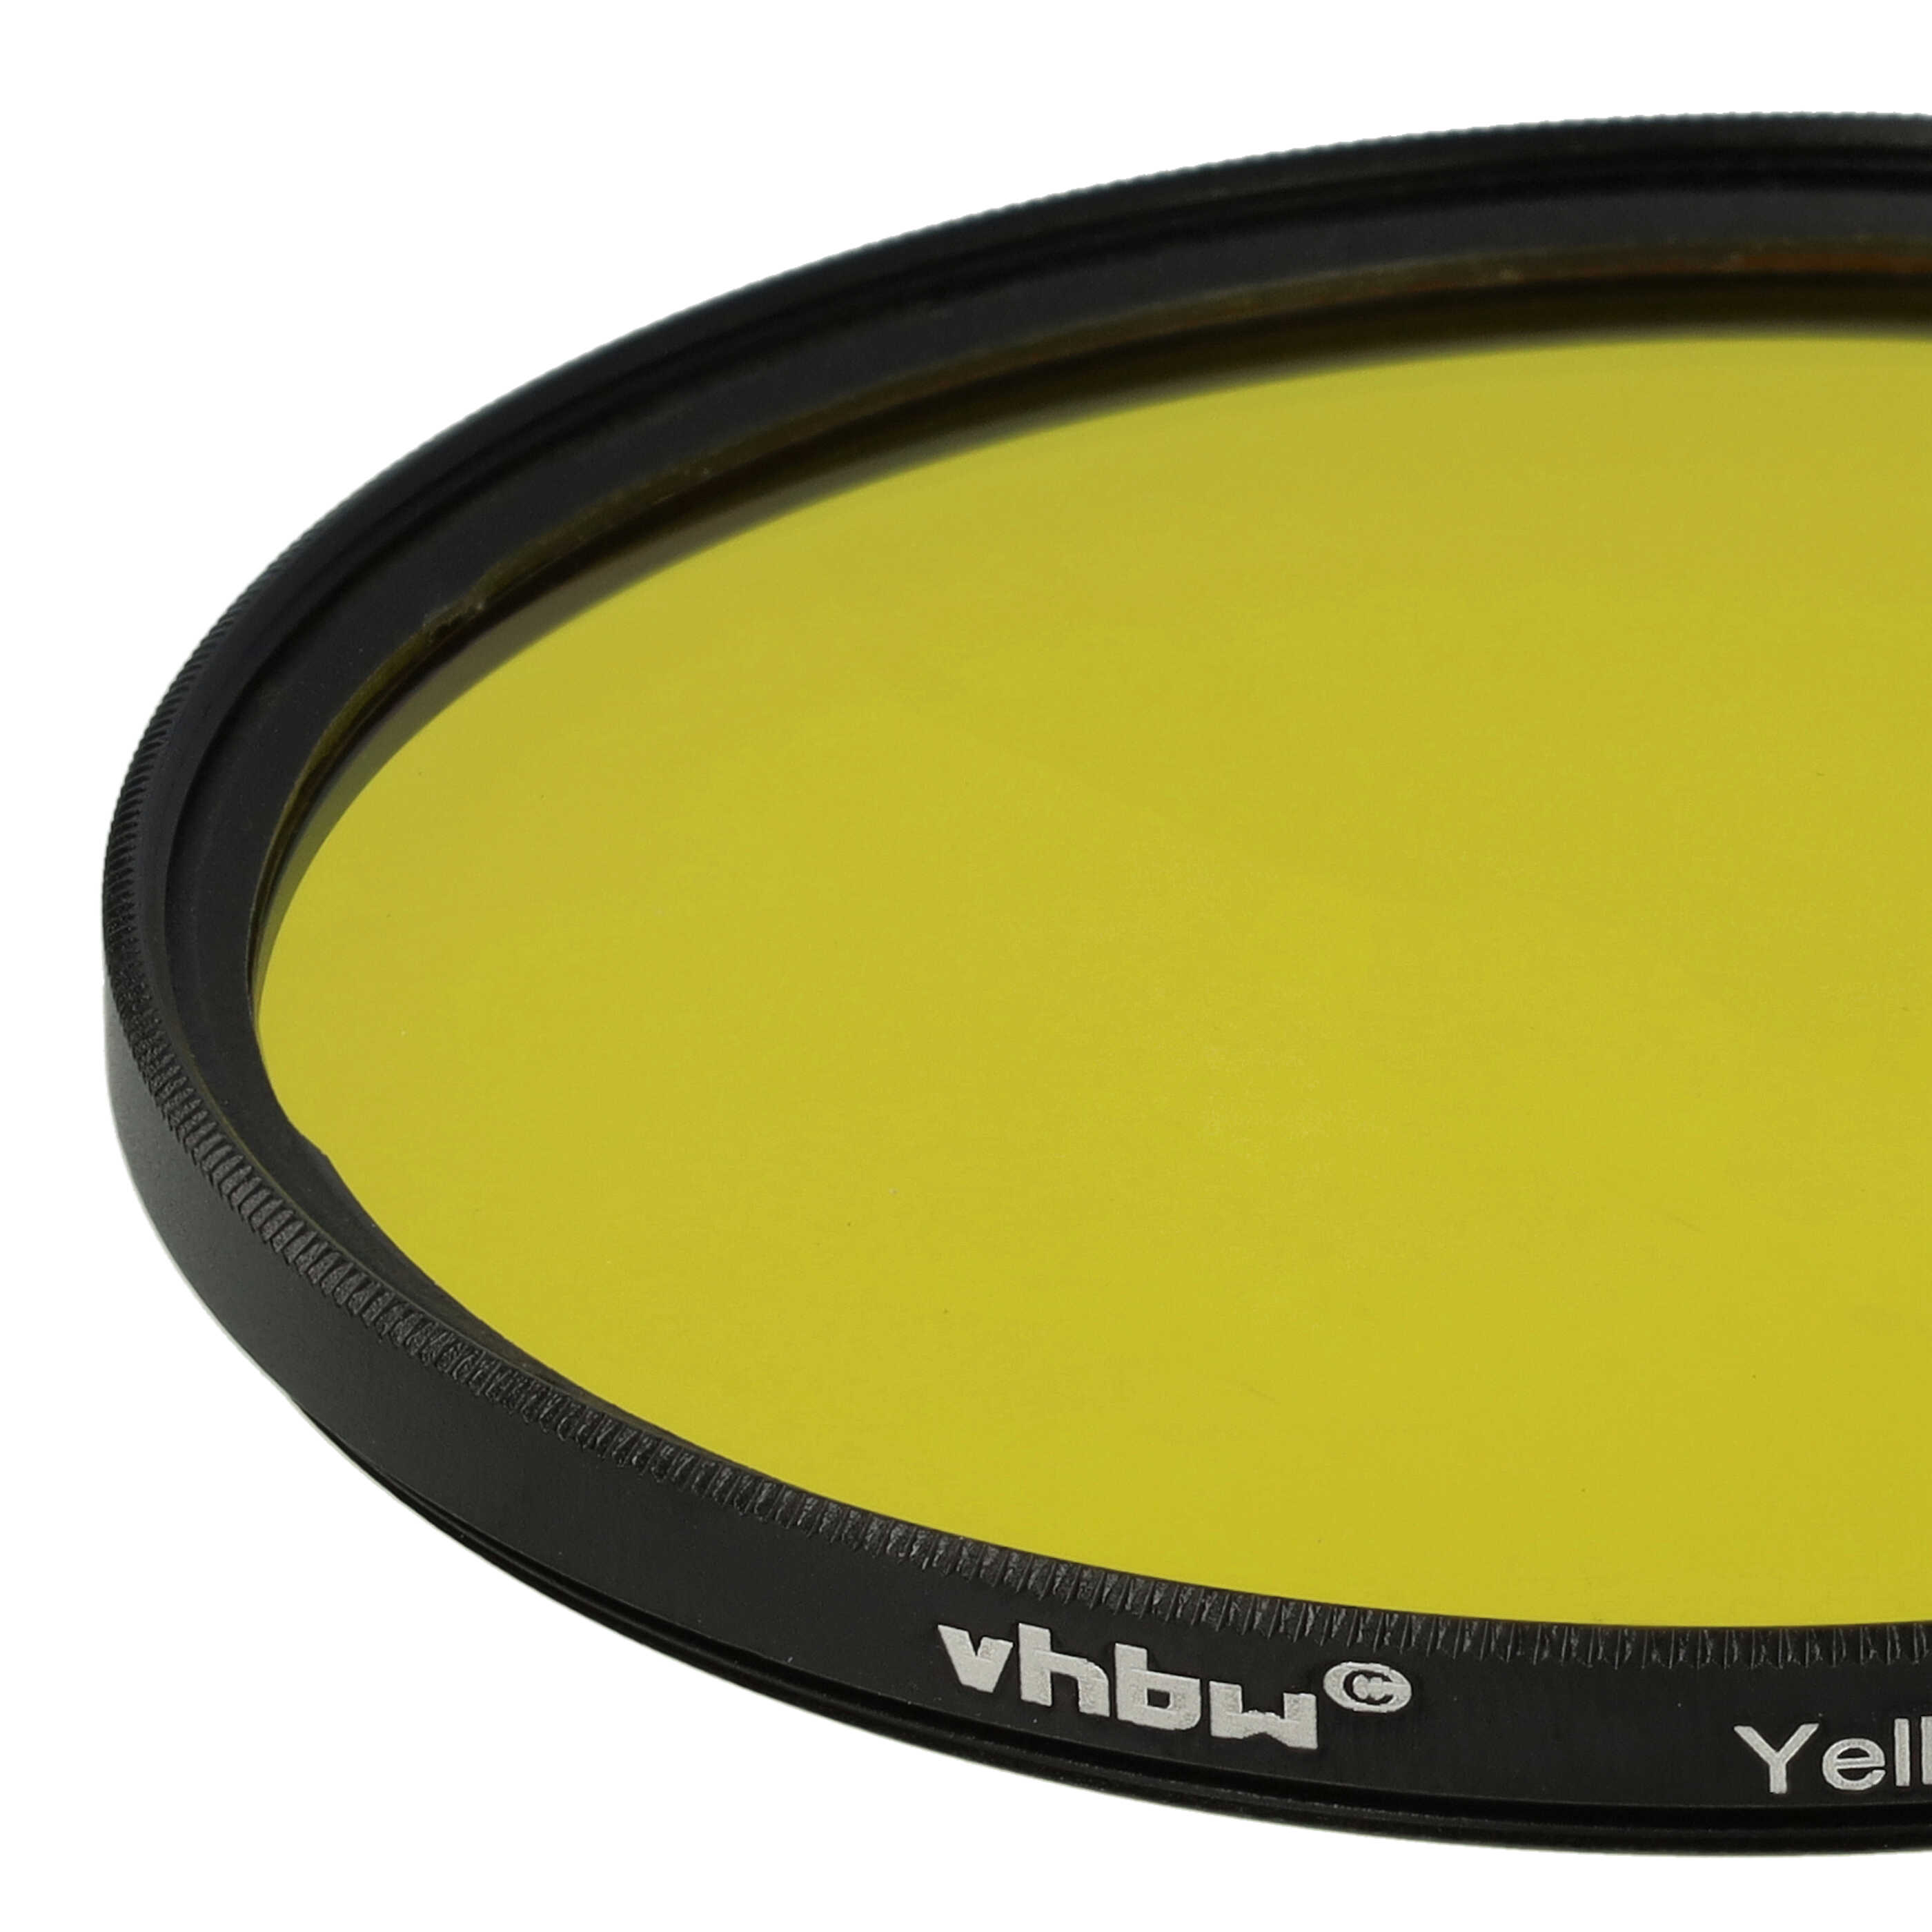 Farbfilter gelb passend für Kamera Objektive mit 77 mm Filtergewinde - Gelbfilter